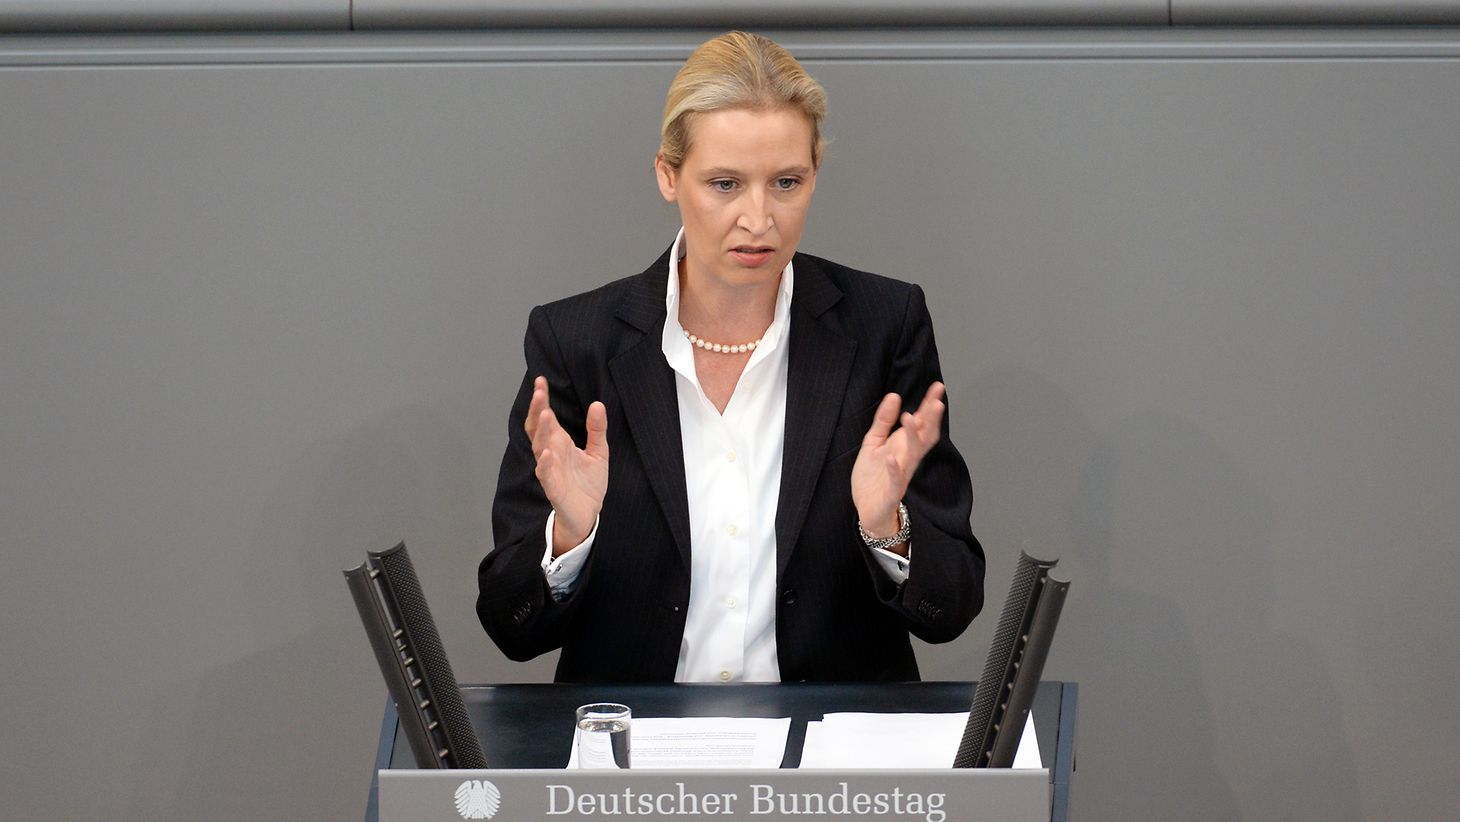 Deutscher Bundestag - Alice Weidel: der Bürgerrechte einfordern, wichtigste Aufgabe